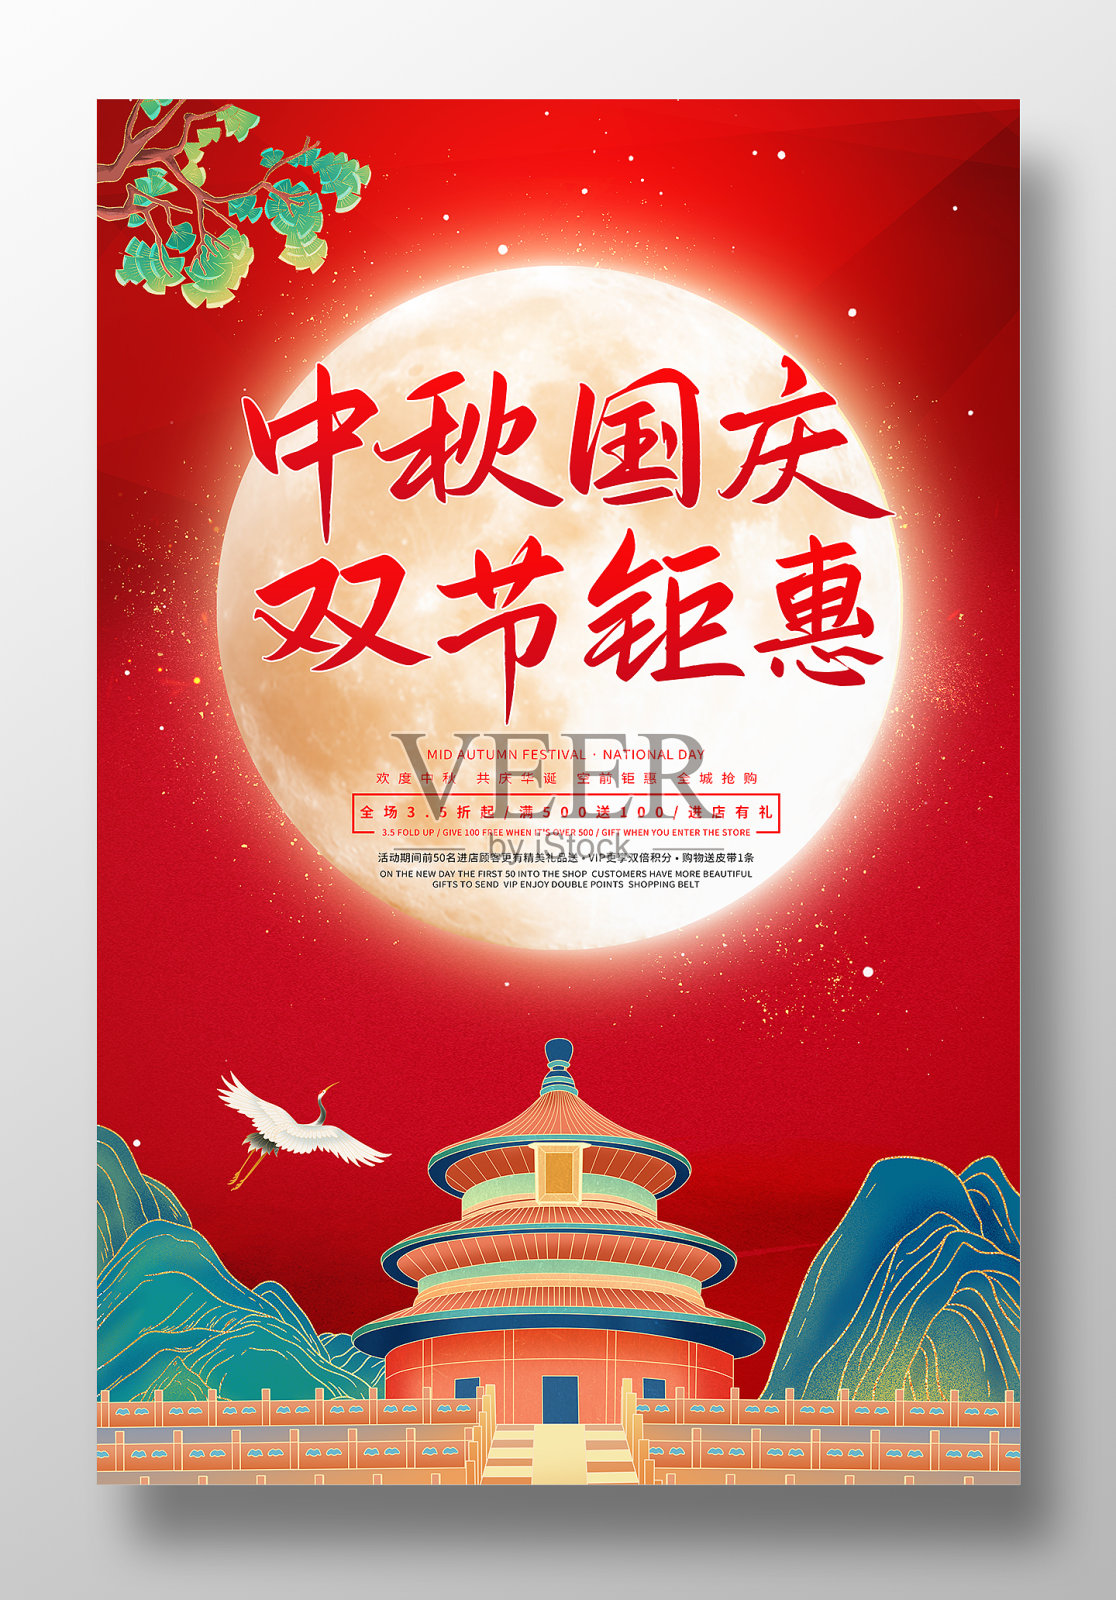 中秋国庆双节钜惠活动促销海报设计模板素材